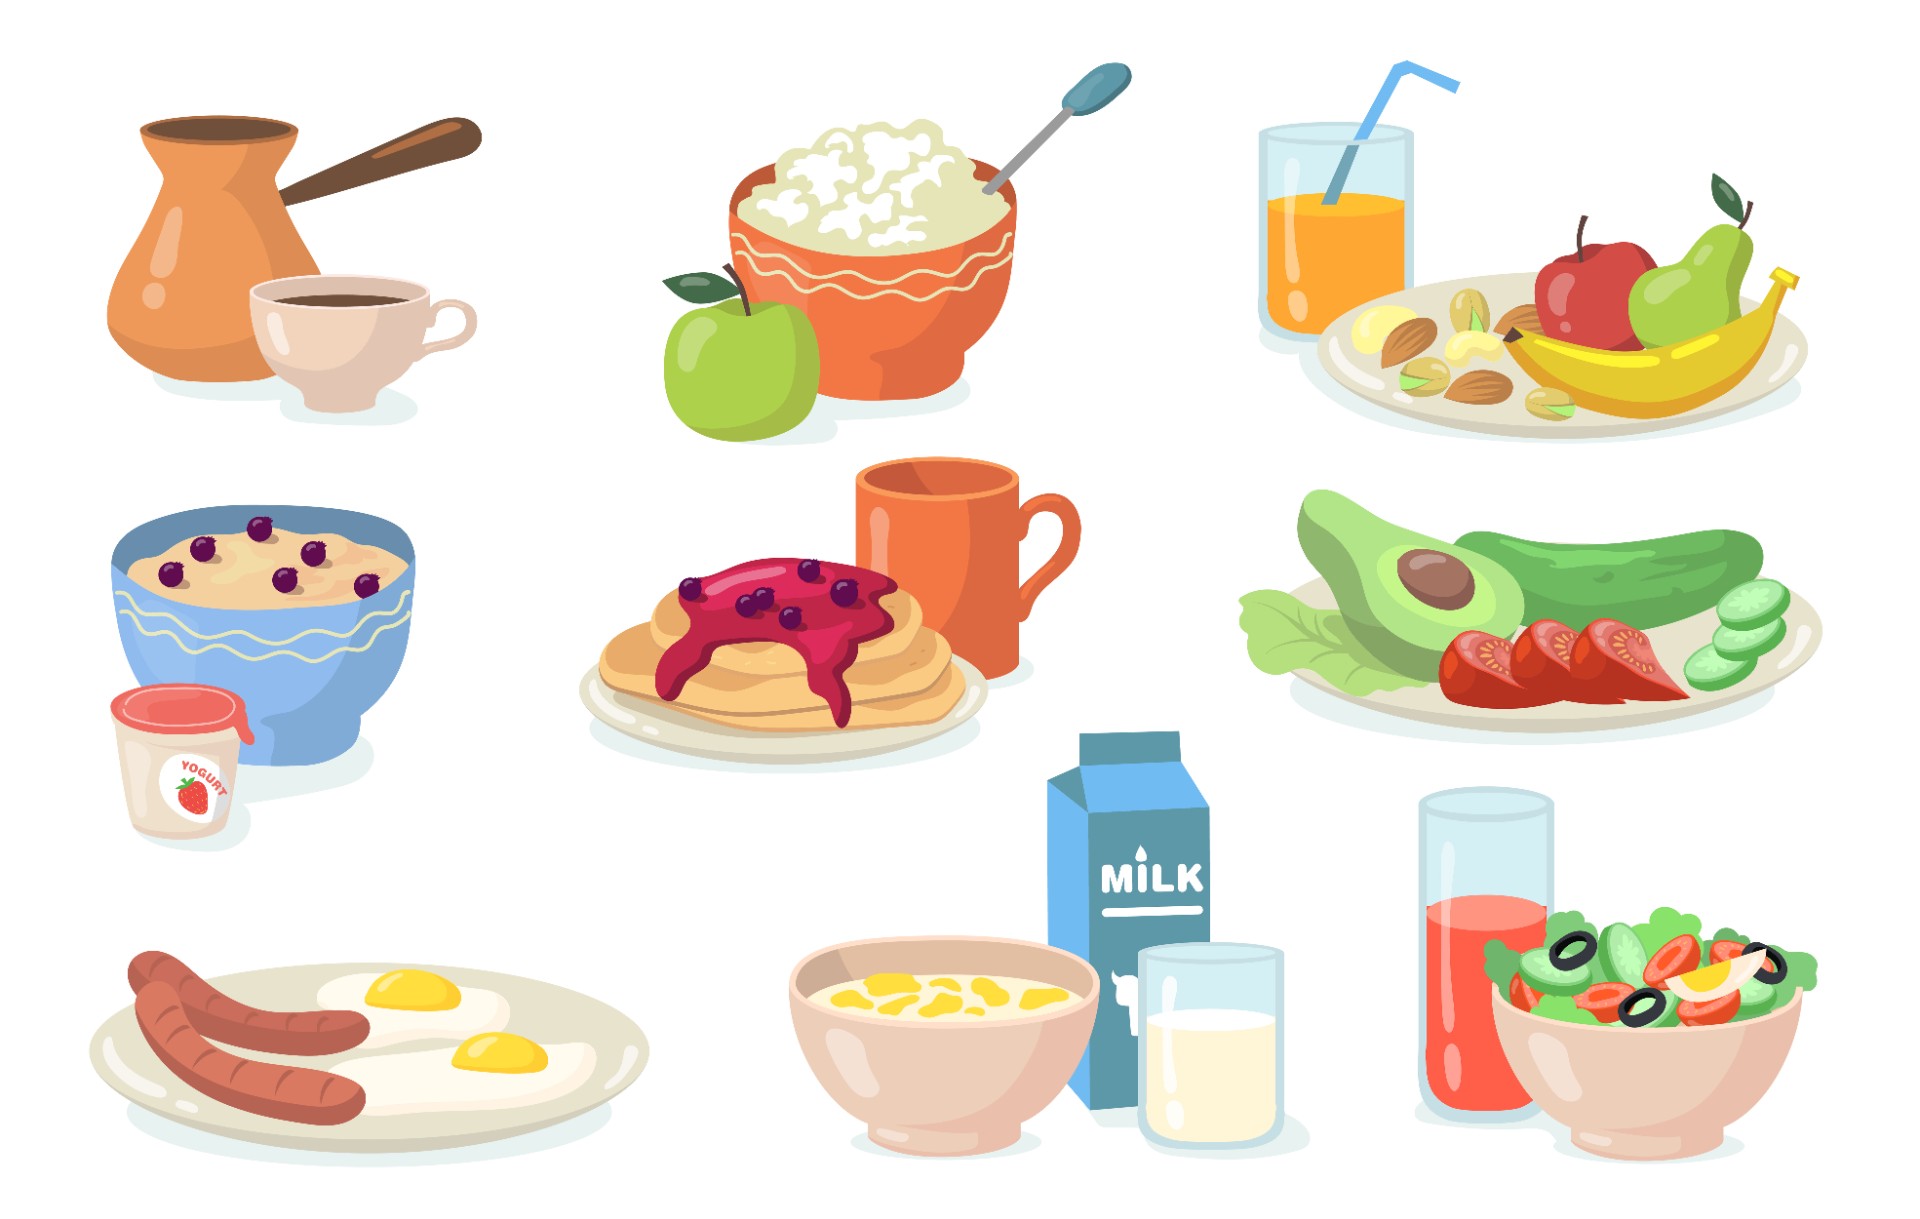 健康的早餐套餐插图0